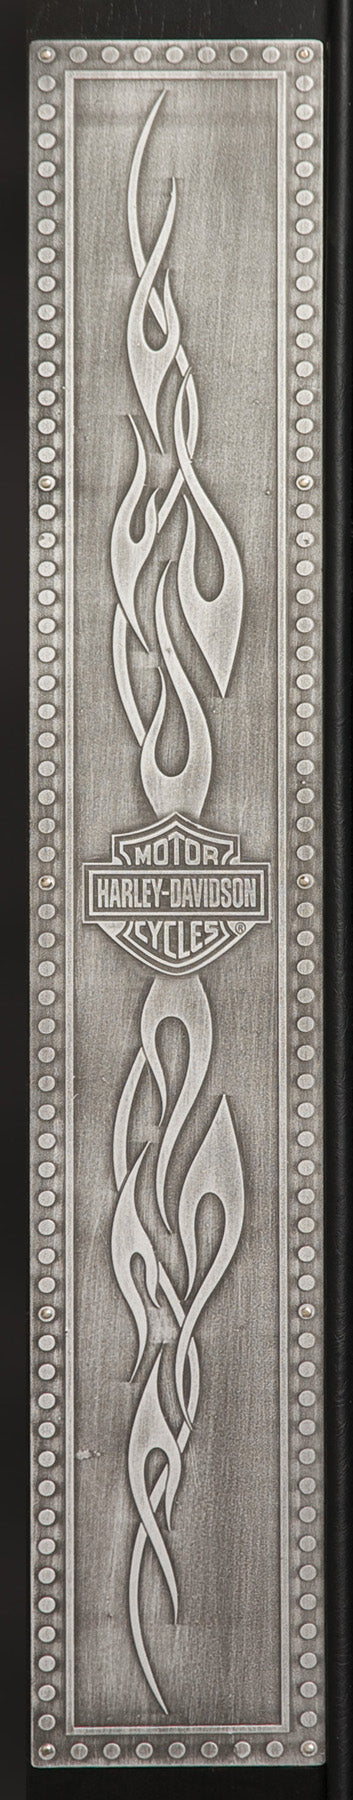 Harley Davidson Bar & Shield Flames Back Bar